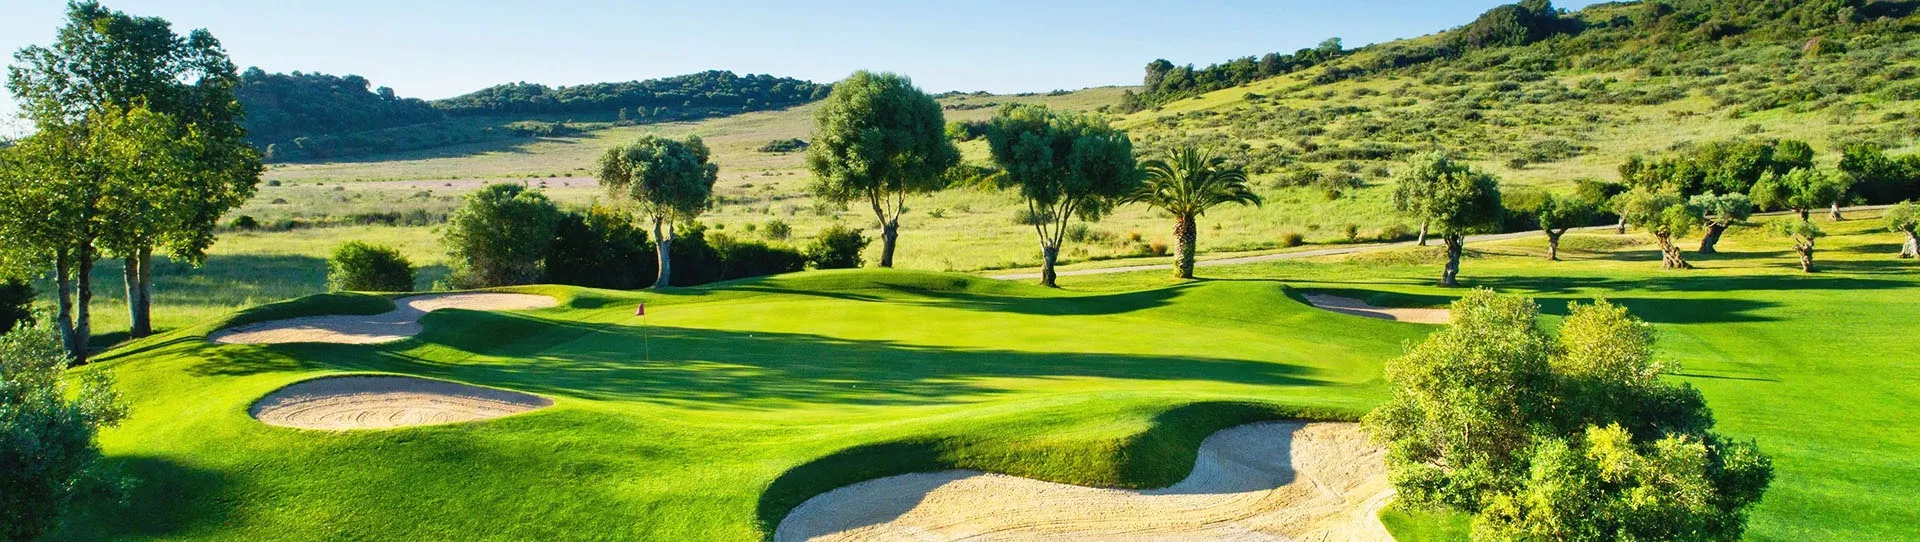 Spain golf courses - Estepona Golf - Photo 1